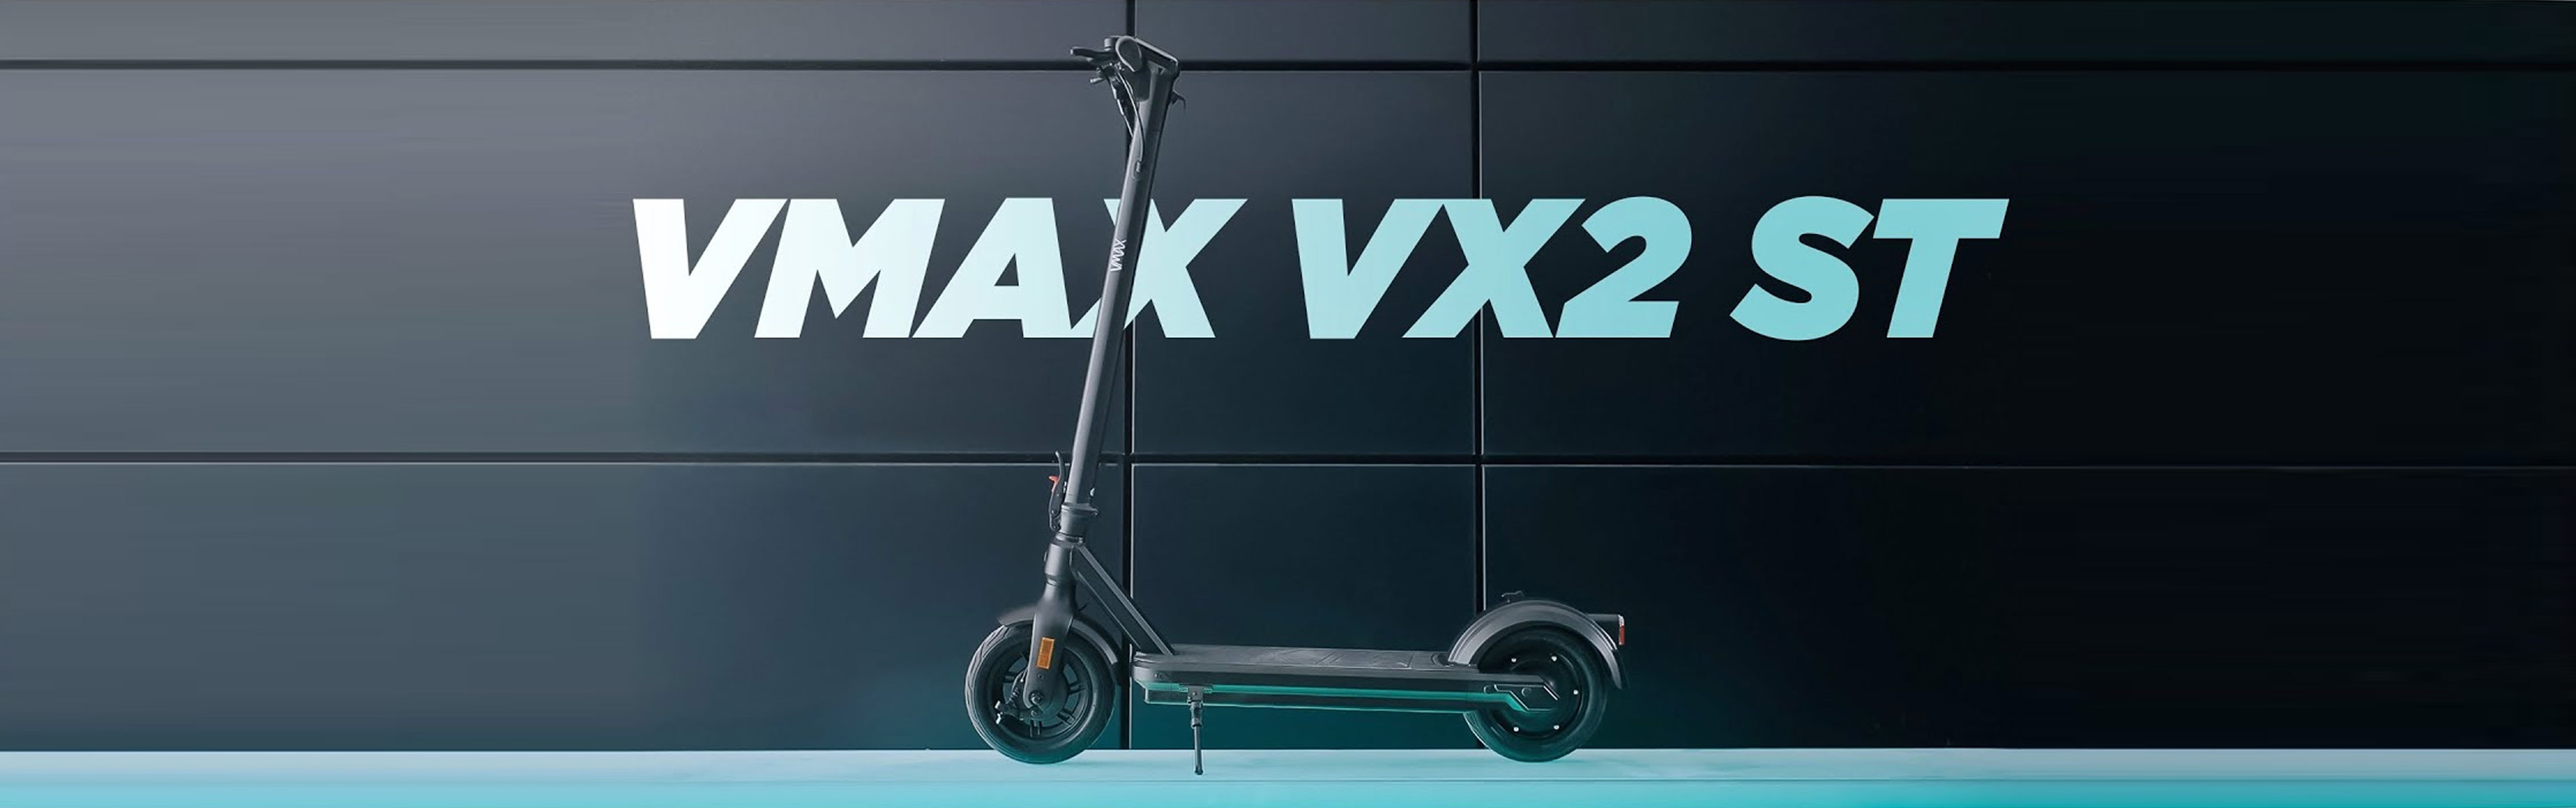 eScooter VMAX VX2 in Seitenansicht